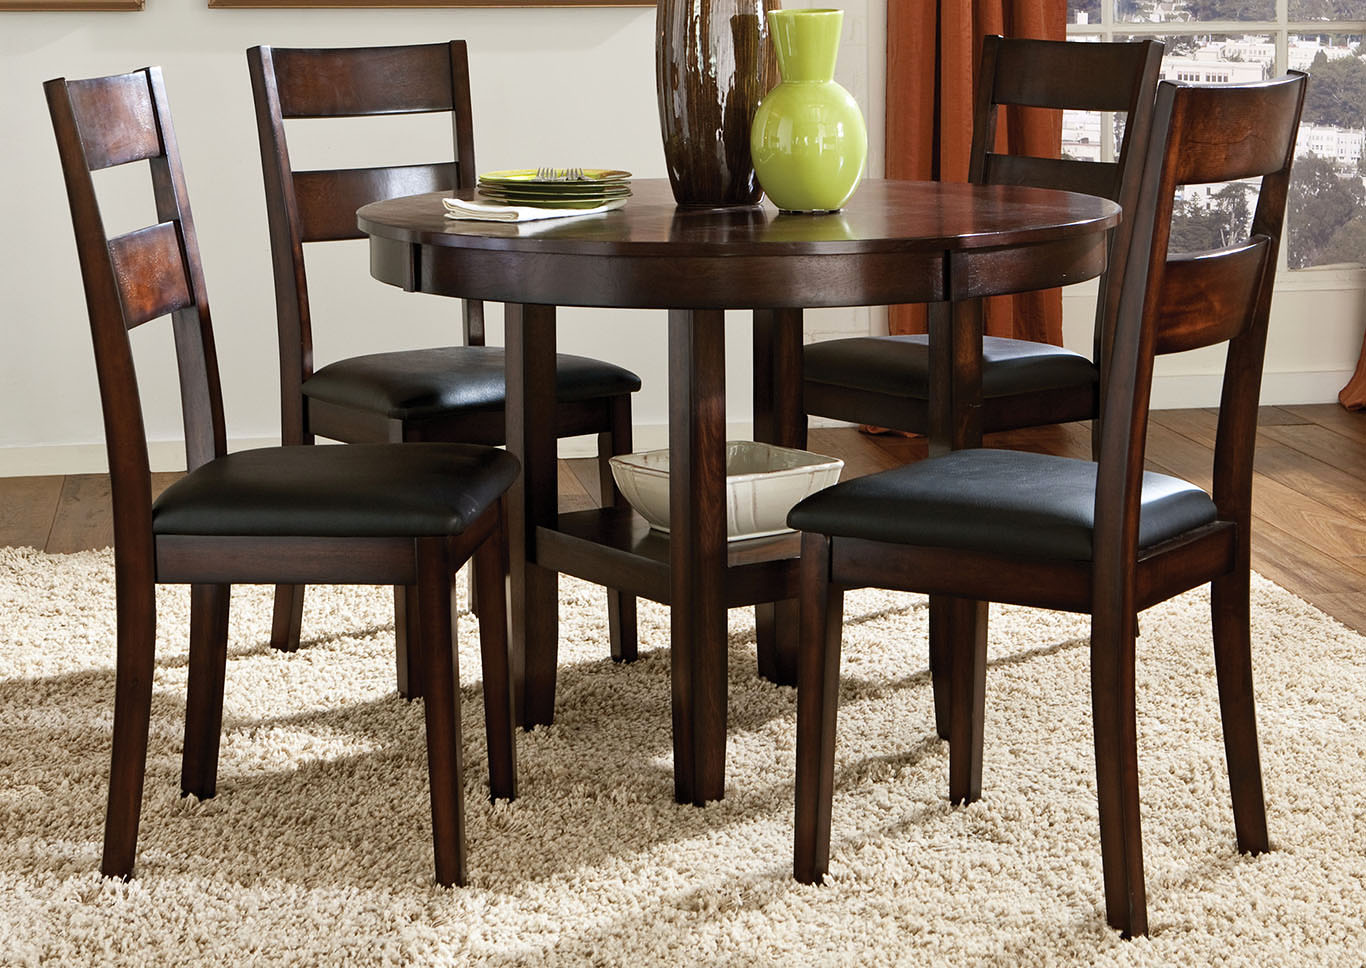 Pendwood Brown Dining Table w/4 Side Chair,Standard